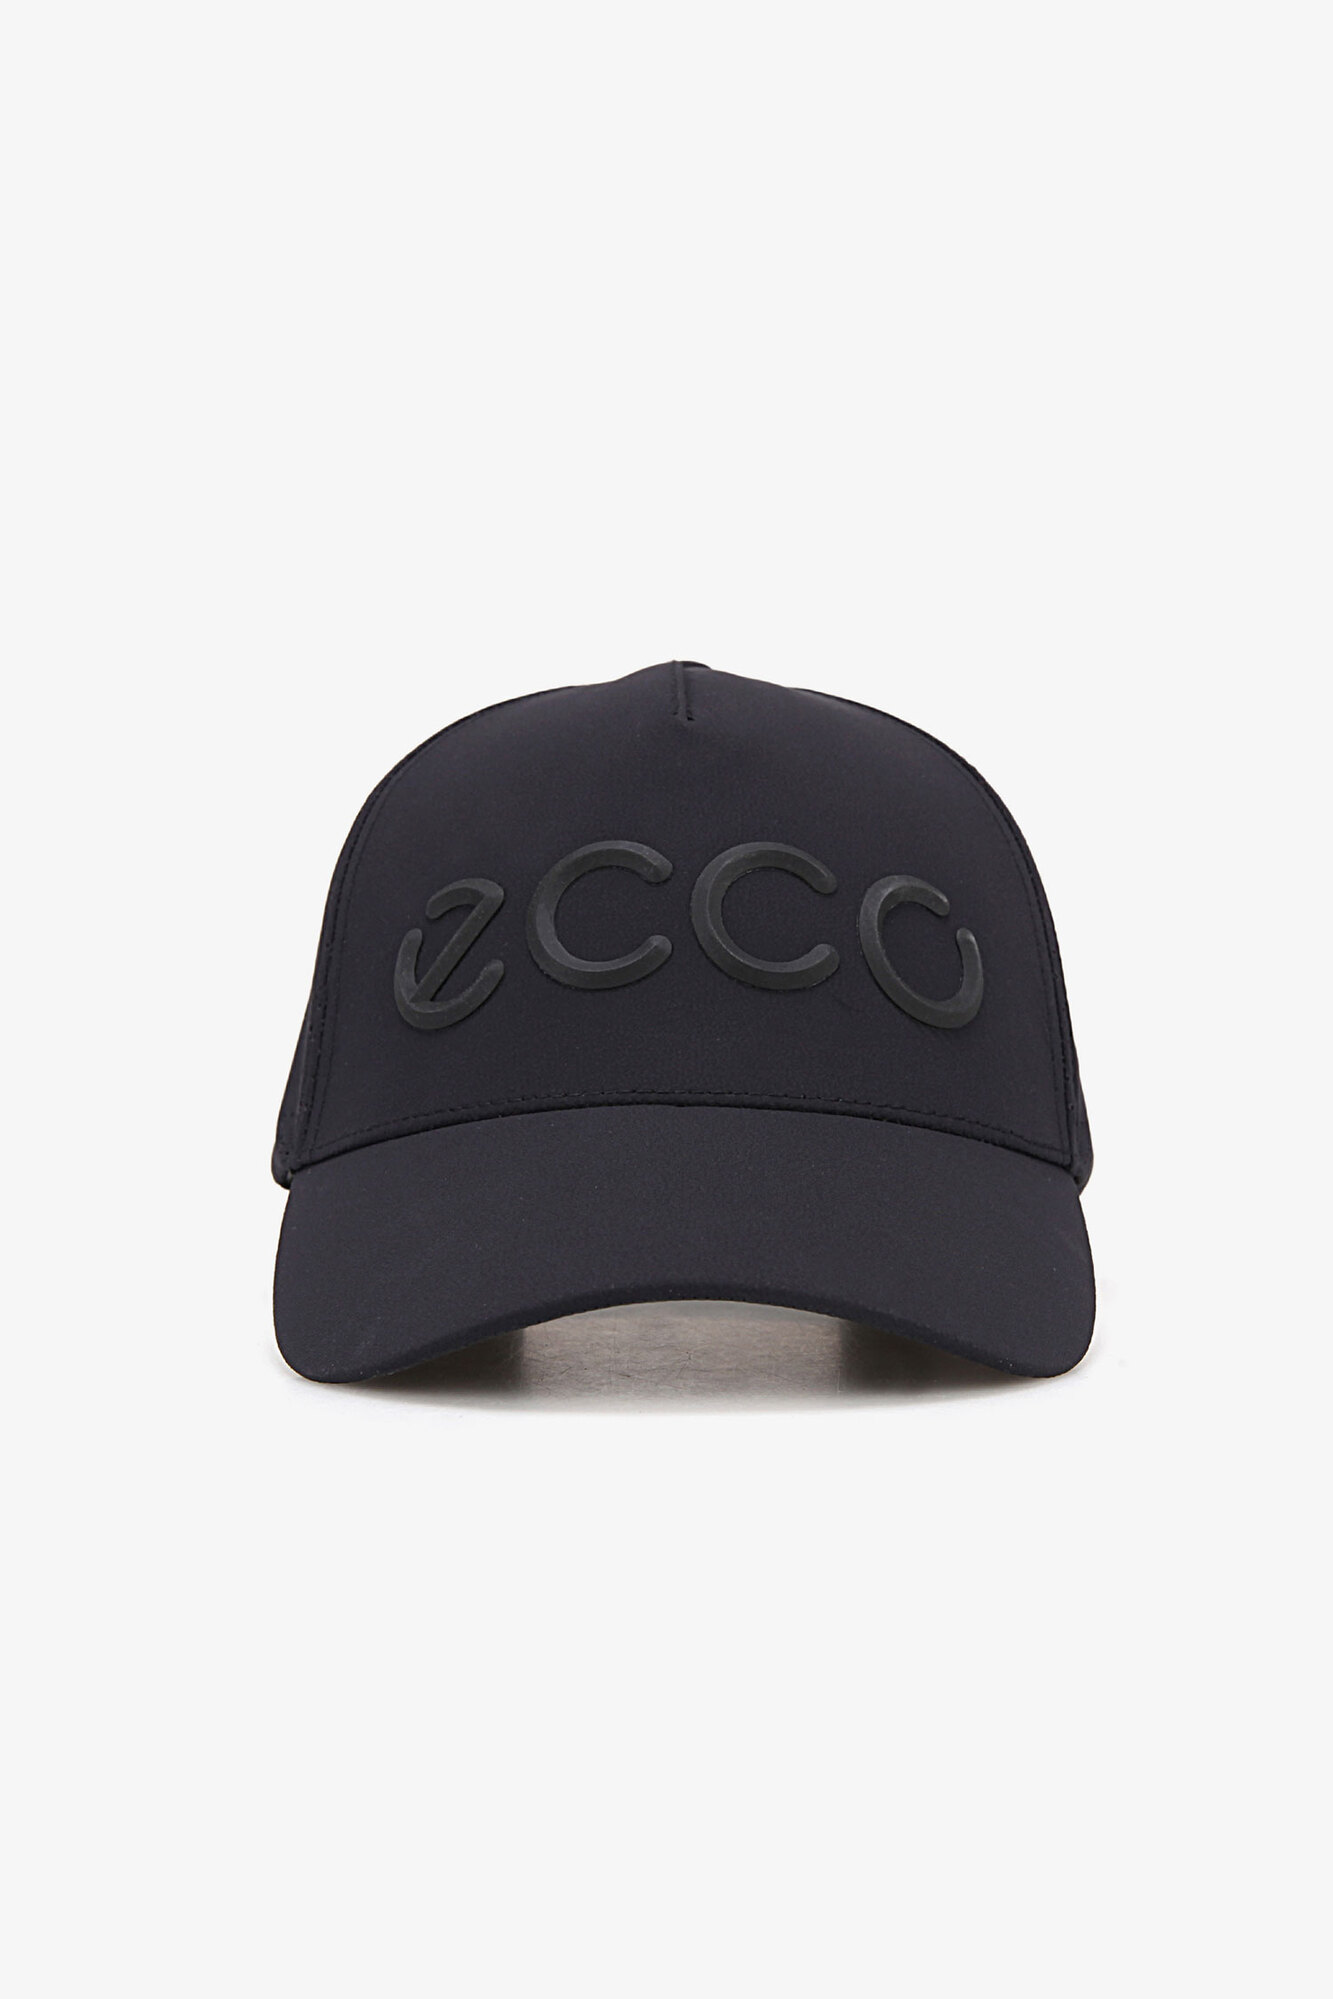 ECCO 베이직로고 남성 SPRING CAP